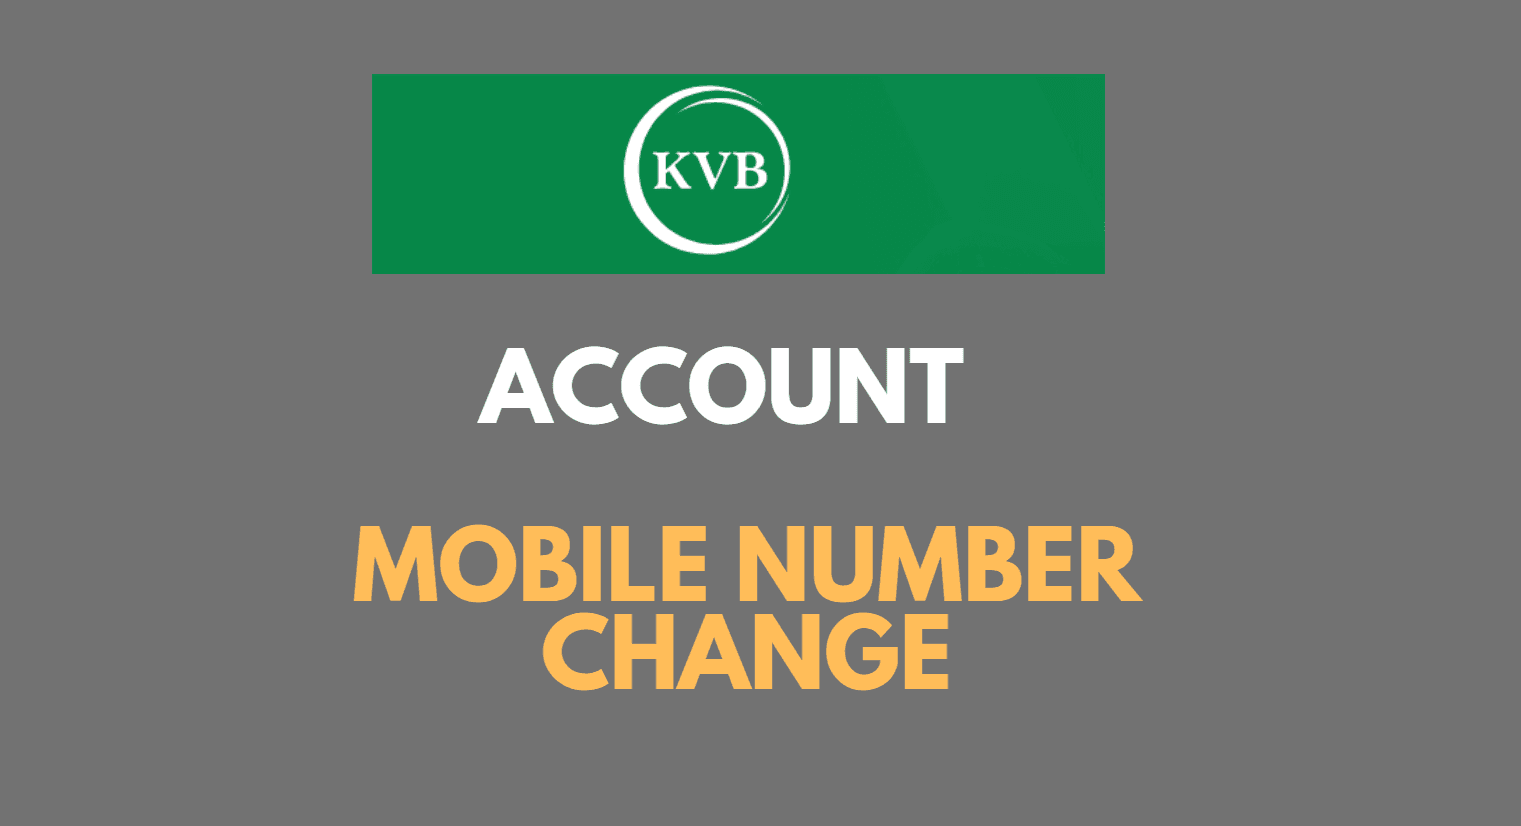 Register or Change Mobile Number in Karur Vysya Bank